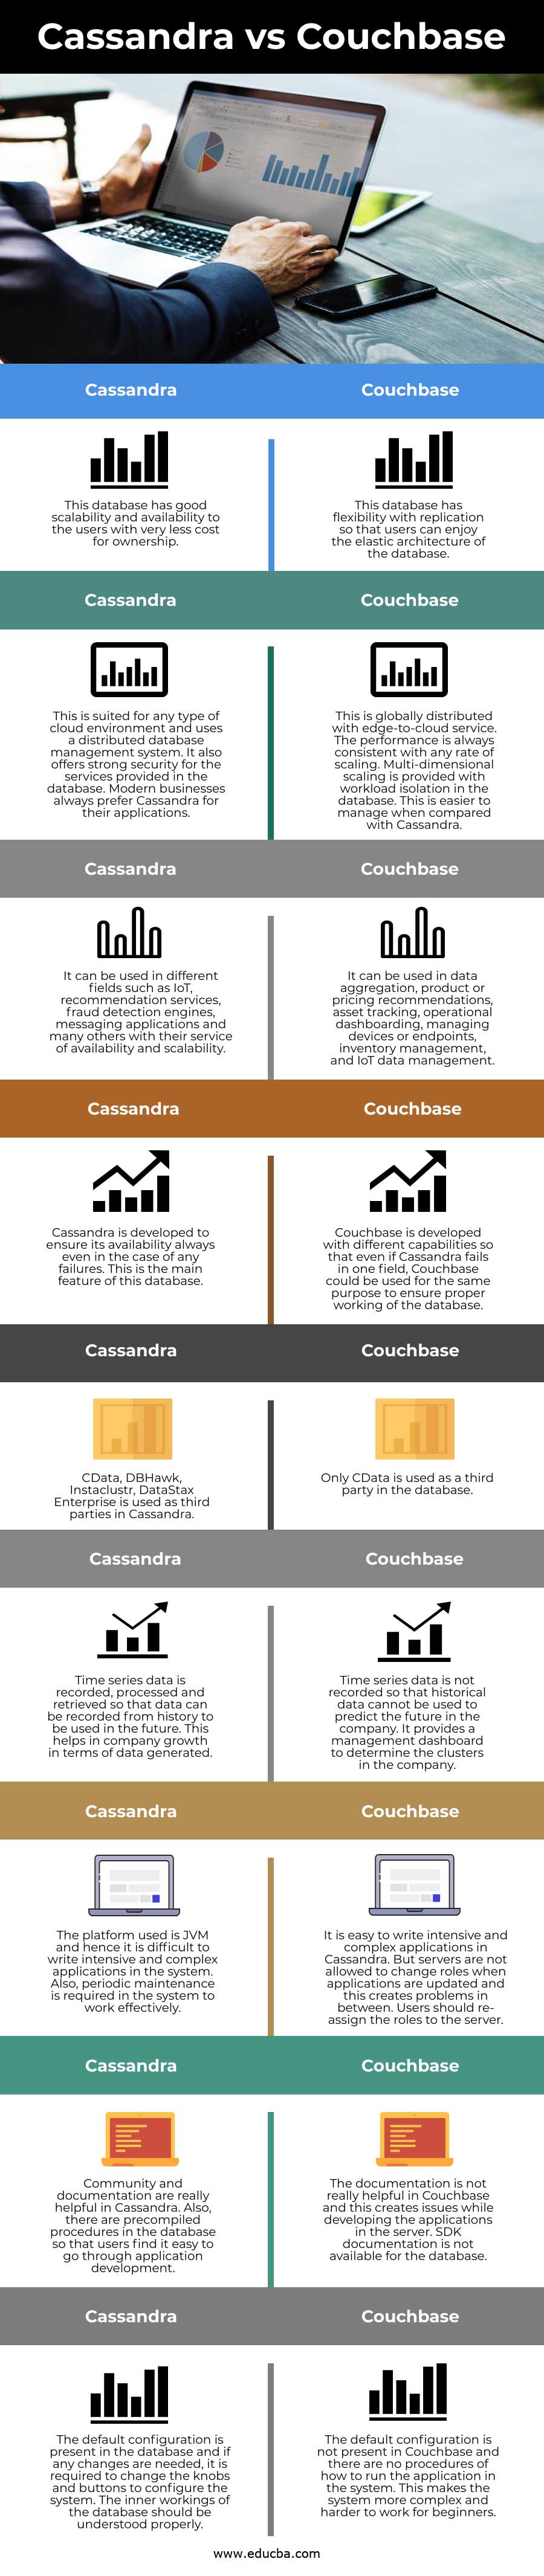 Cassandra vs Couchbase info